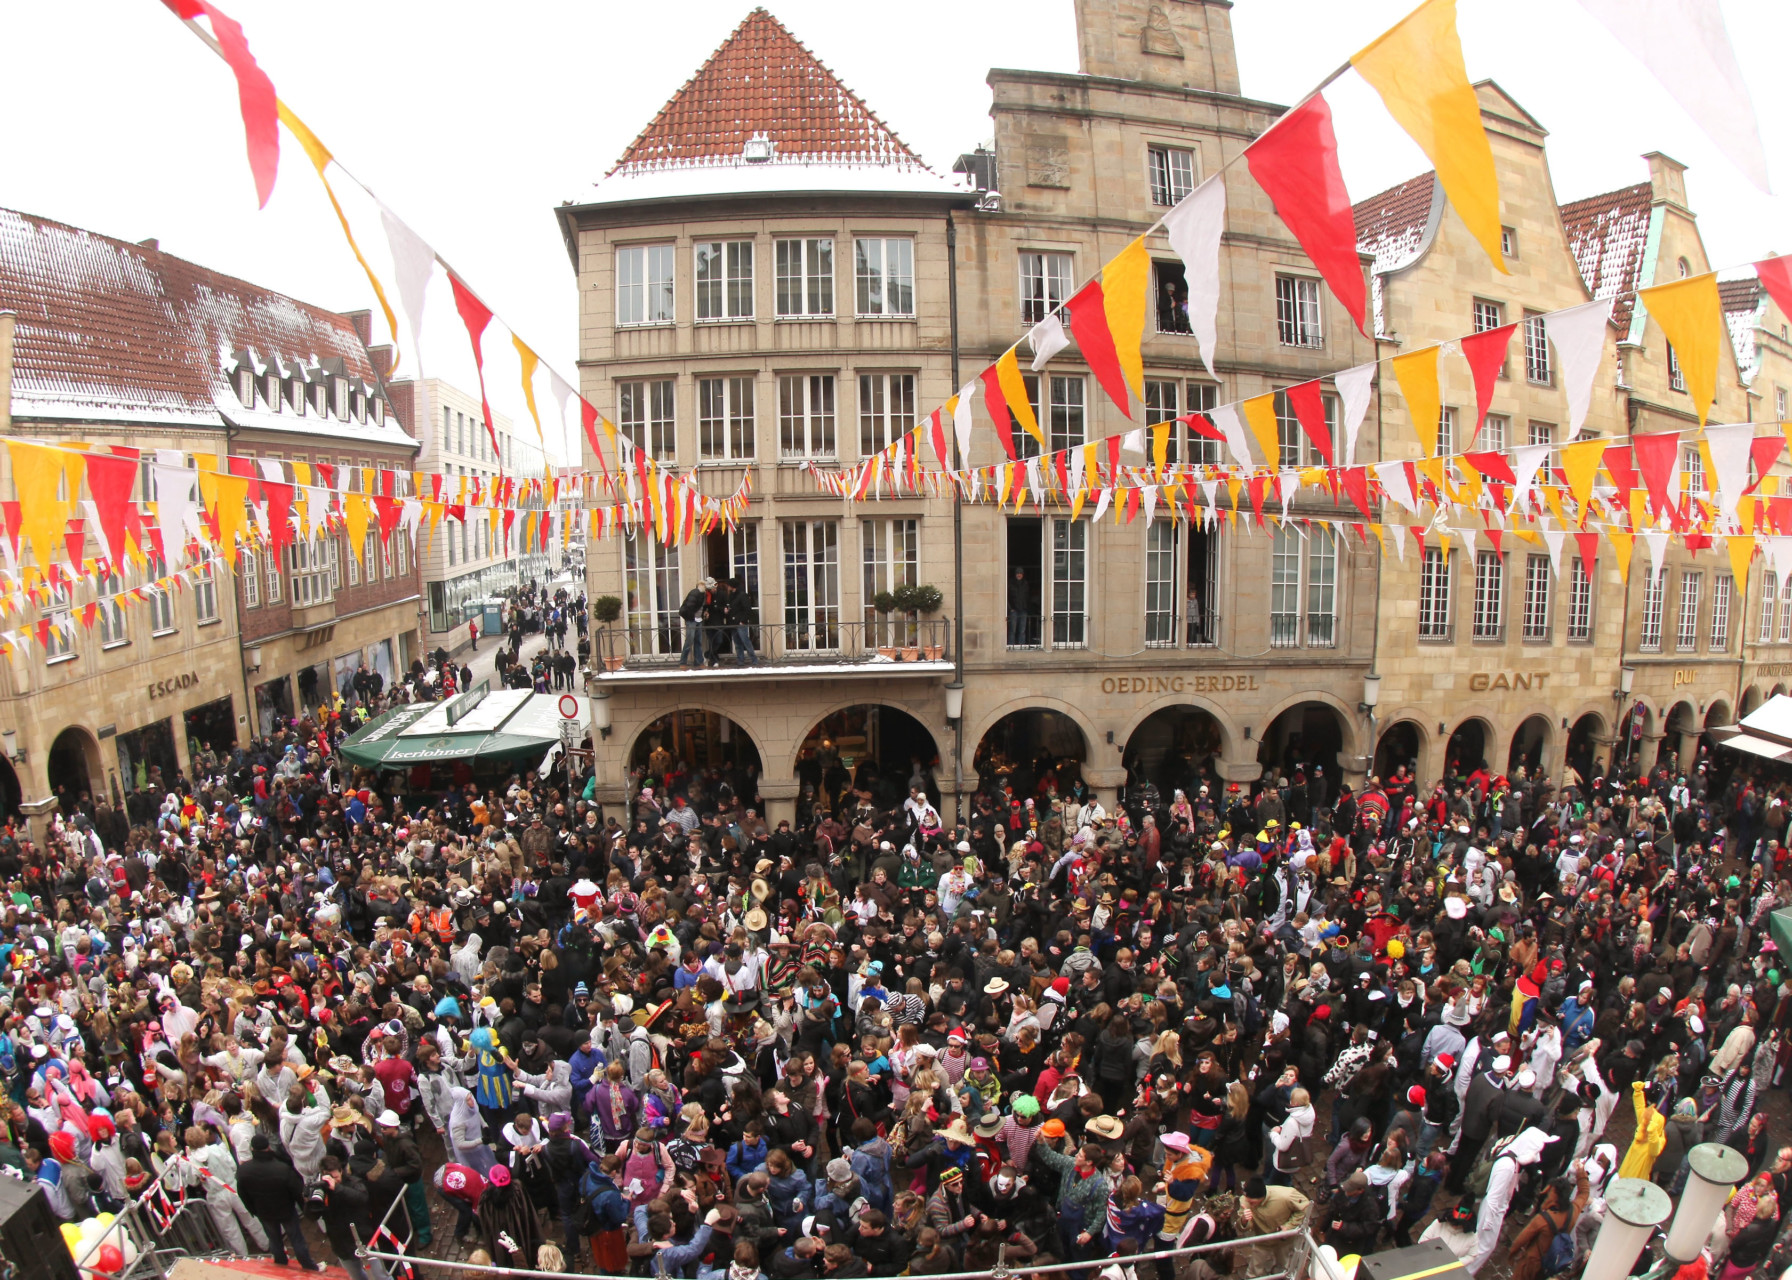 Karnevalstrubel beim Rosenmontagsumzug in Münster